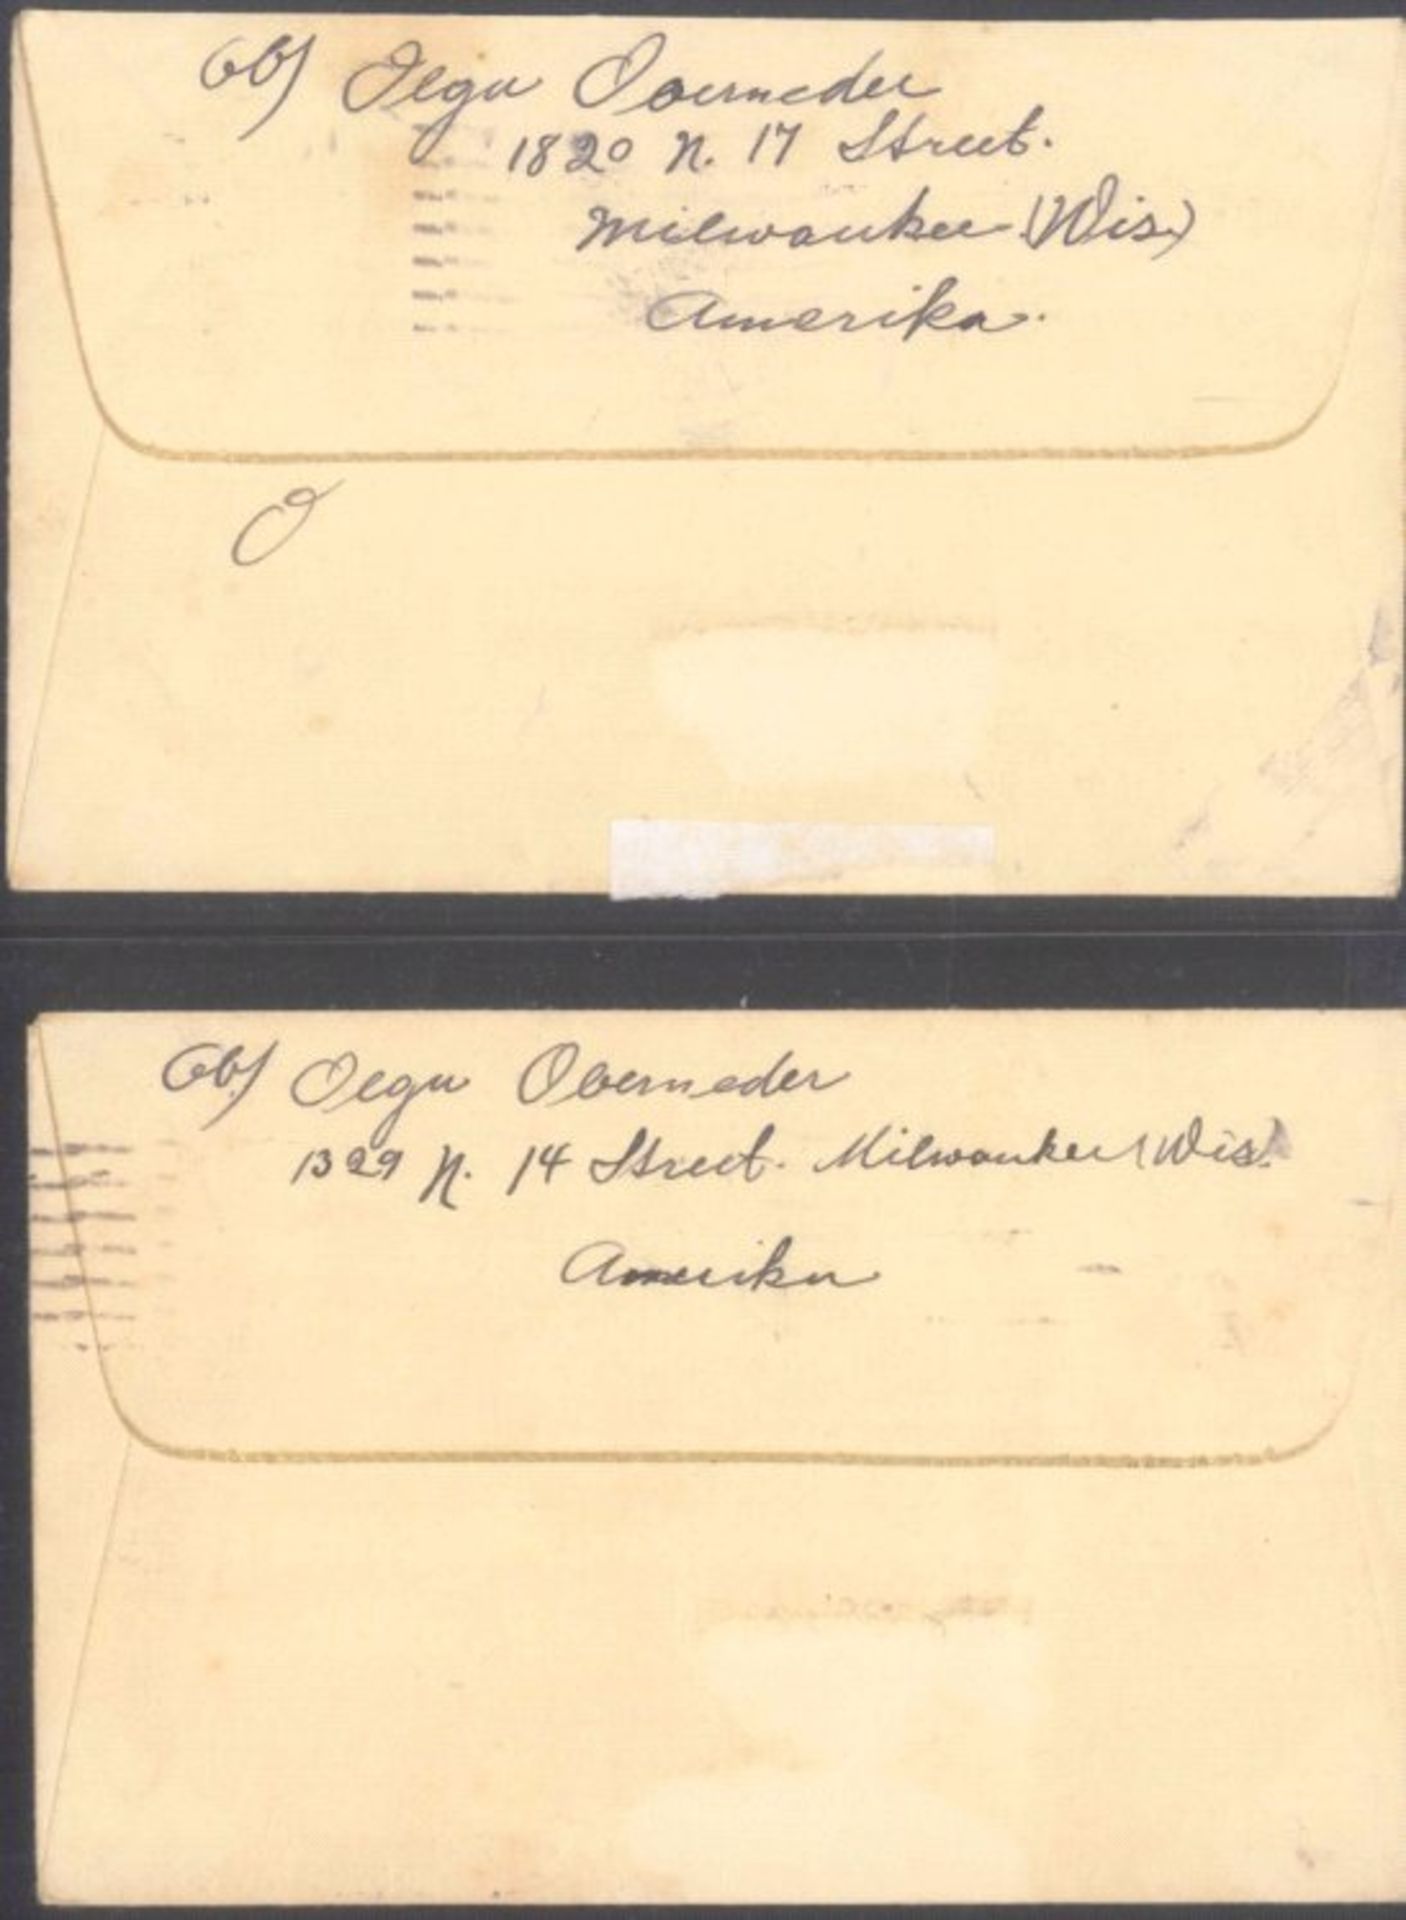 HEIMAT: UNTERGRIESBACH bei PASSAU, auch MOTIV DCHTER2 Briefe 1932 von USA MILWAUKEE nach oben - Image 2 of 2